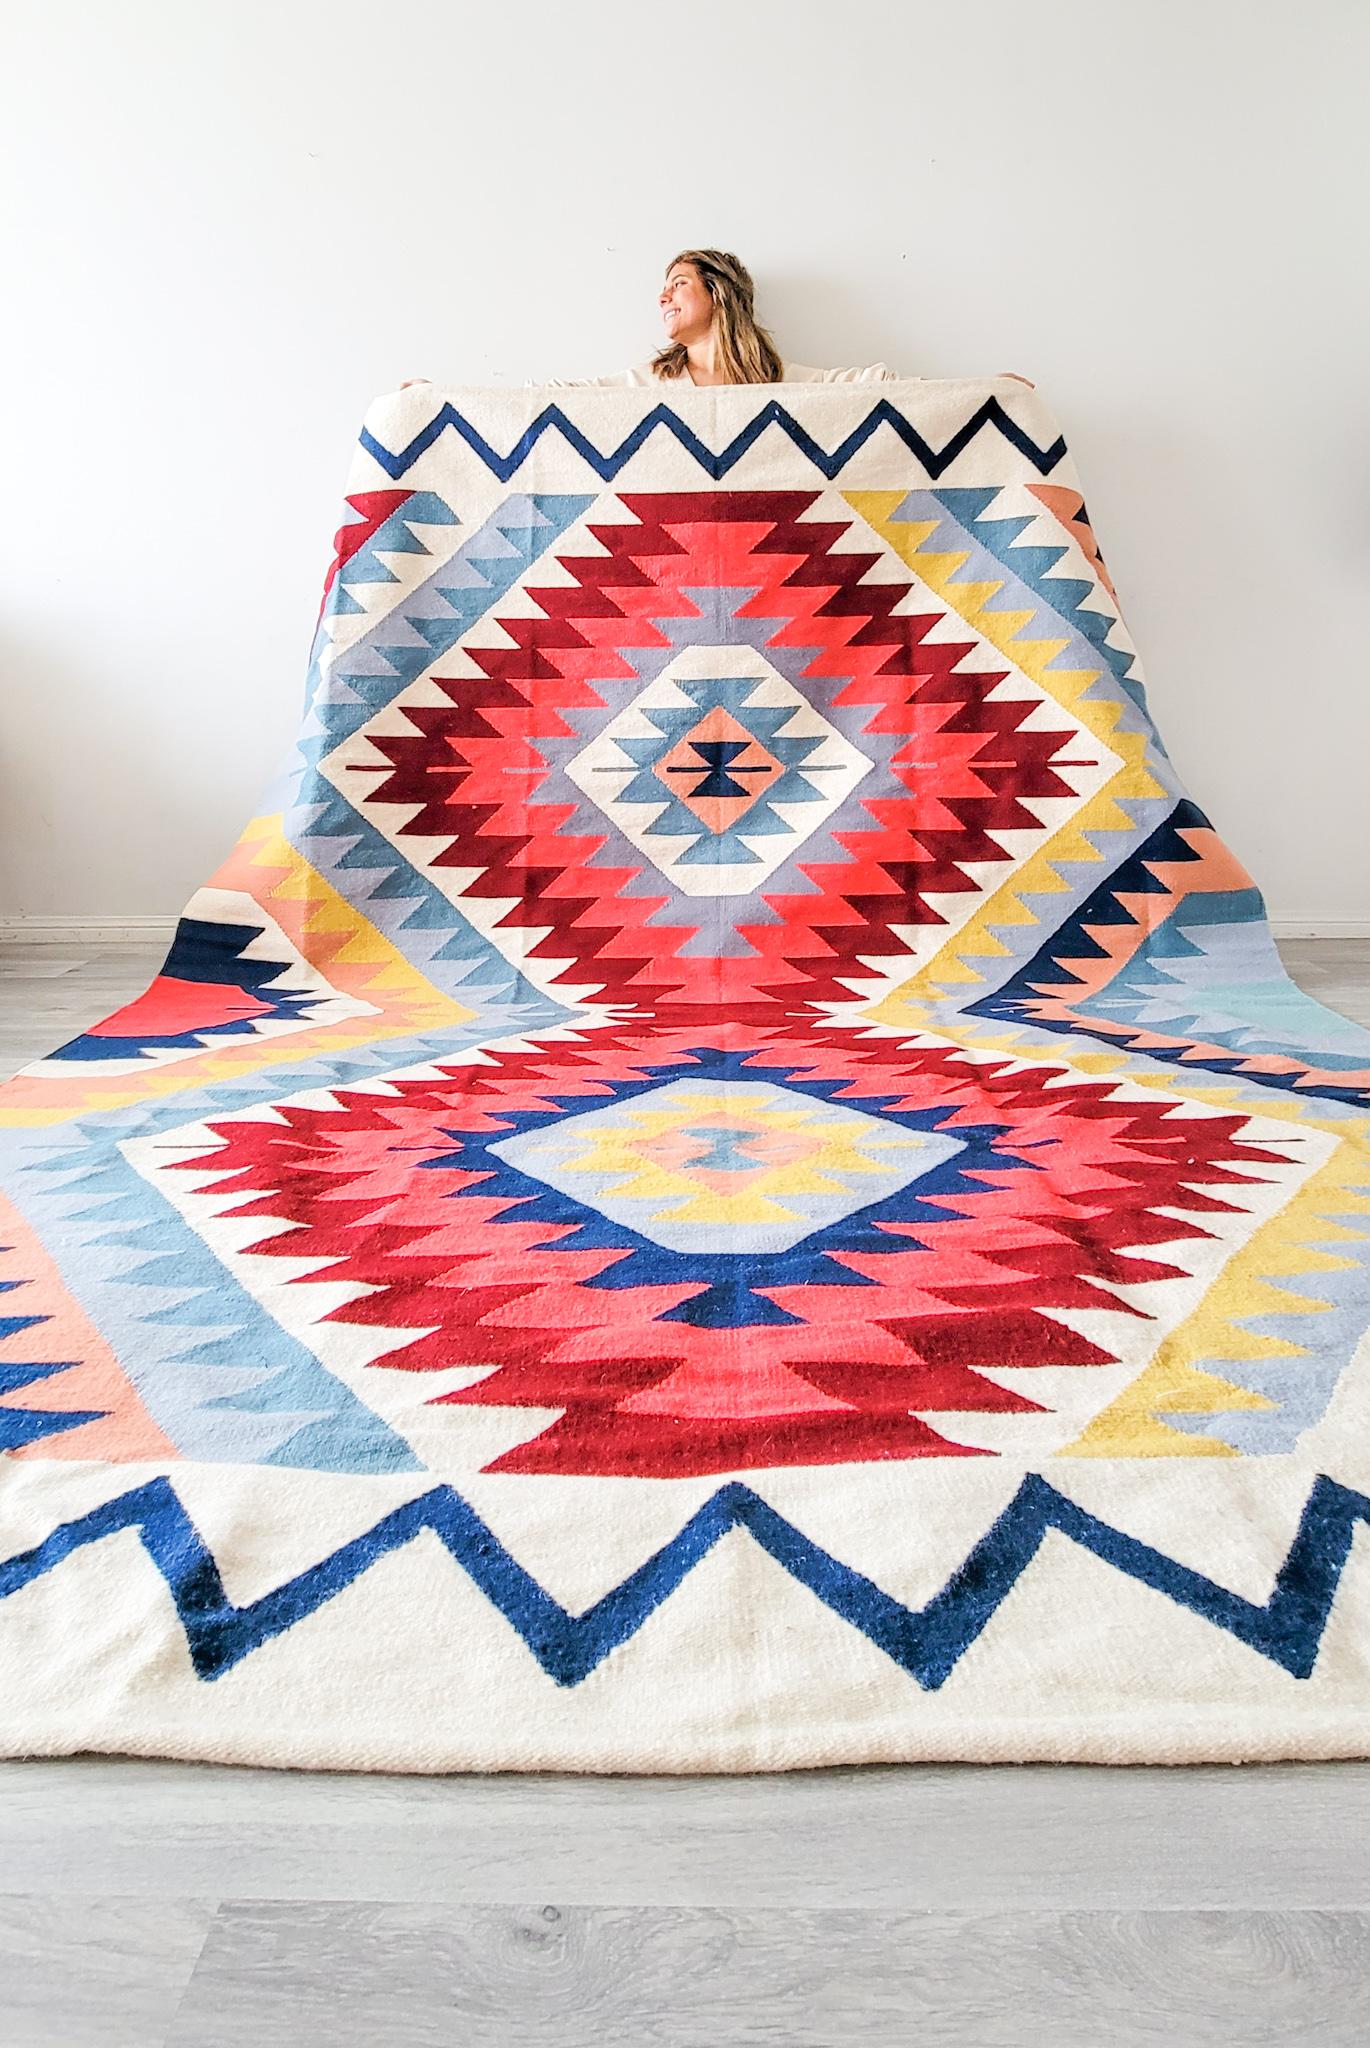 Der handgewebte Kelimteppich von Luxor ist ein farbenfroher Teppich, der Ihrem Raum Persönlichkeit und Wärme verleiht.

Beschreibung des Produkts
Hergestellt aus natürlicher Wolle 
Farben:  Burgunderrot, Gelb, Blau, Lachs, Creme, Mint, Lila,